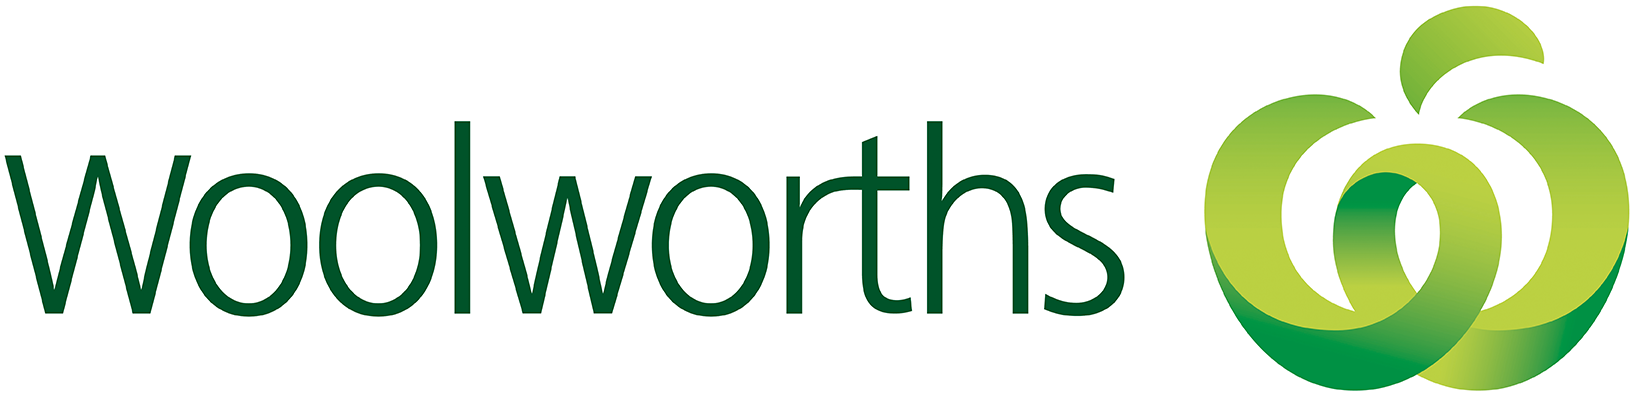 Woolworths-logo-2021